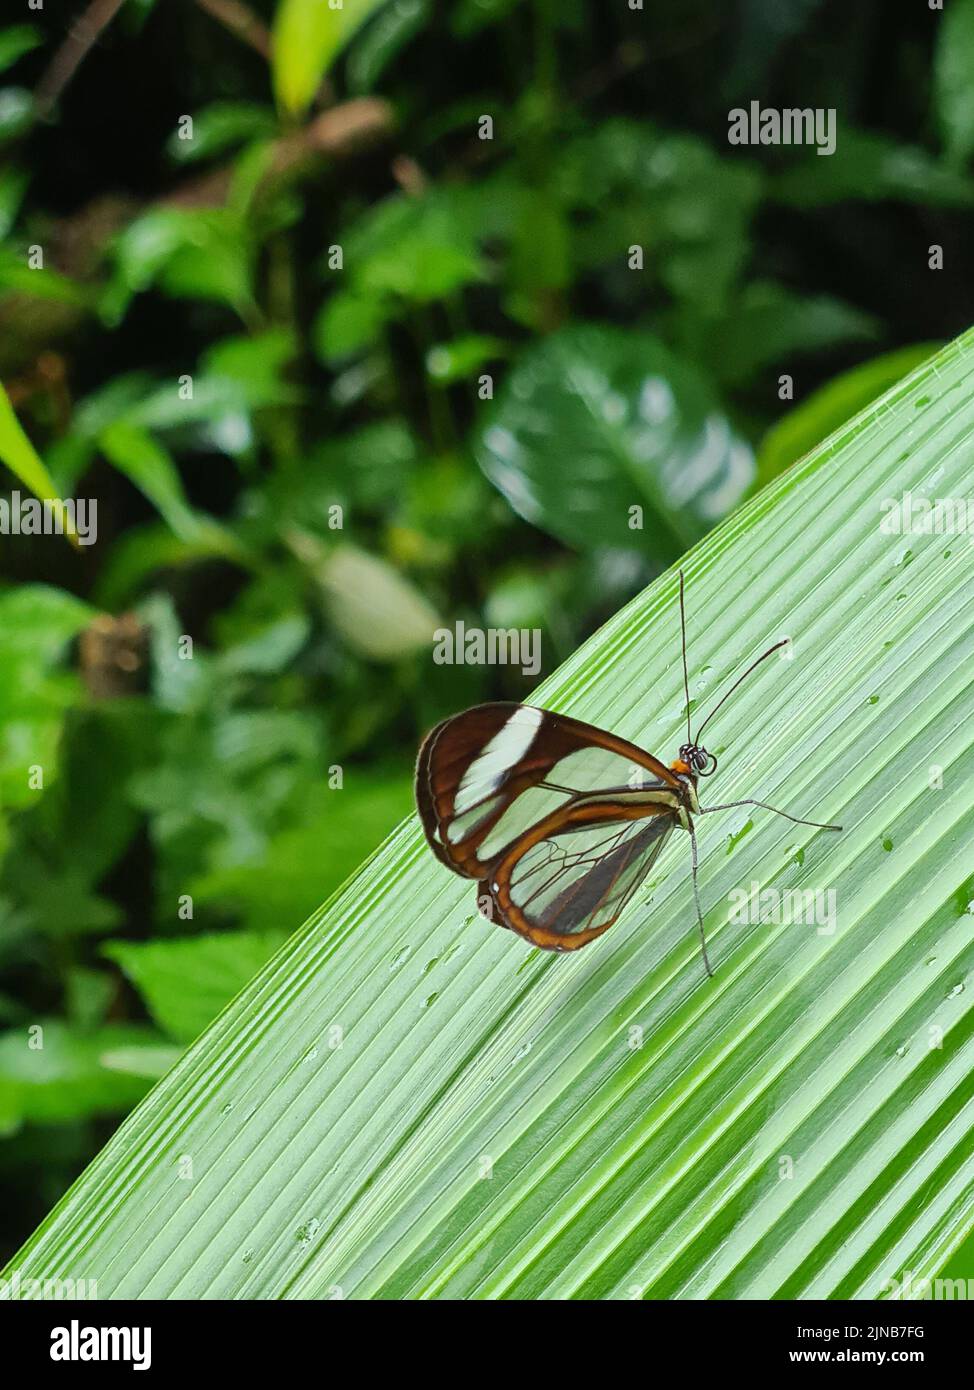 Brauner Schmetterling mit transparenten Flügeln sitzt auf grünem Blatt auf unscharfem natürlichem Hintergrund Stockfoto